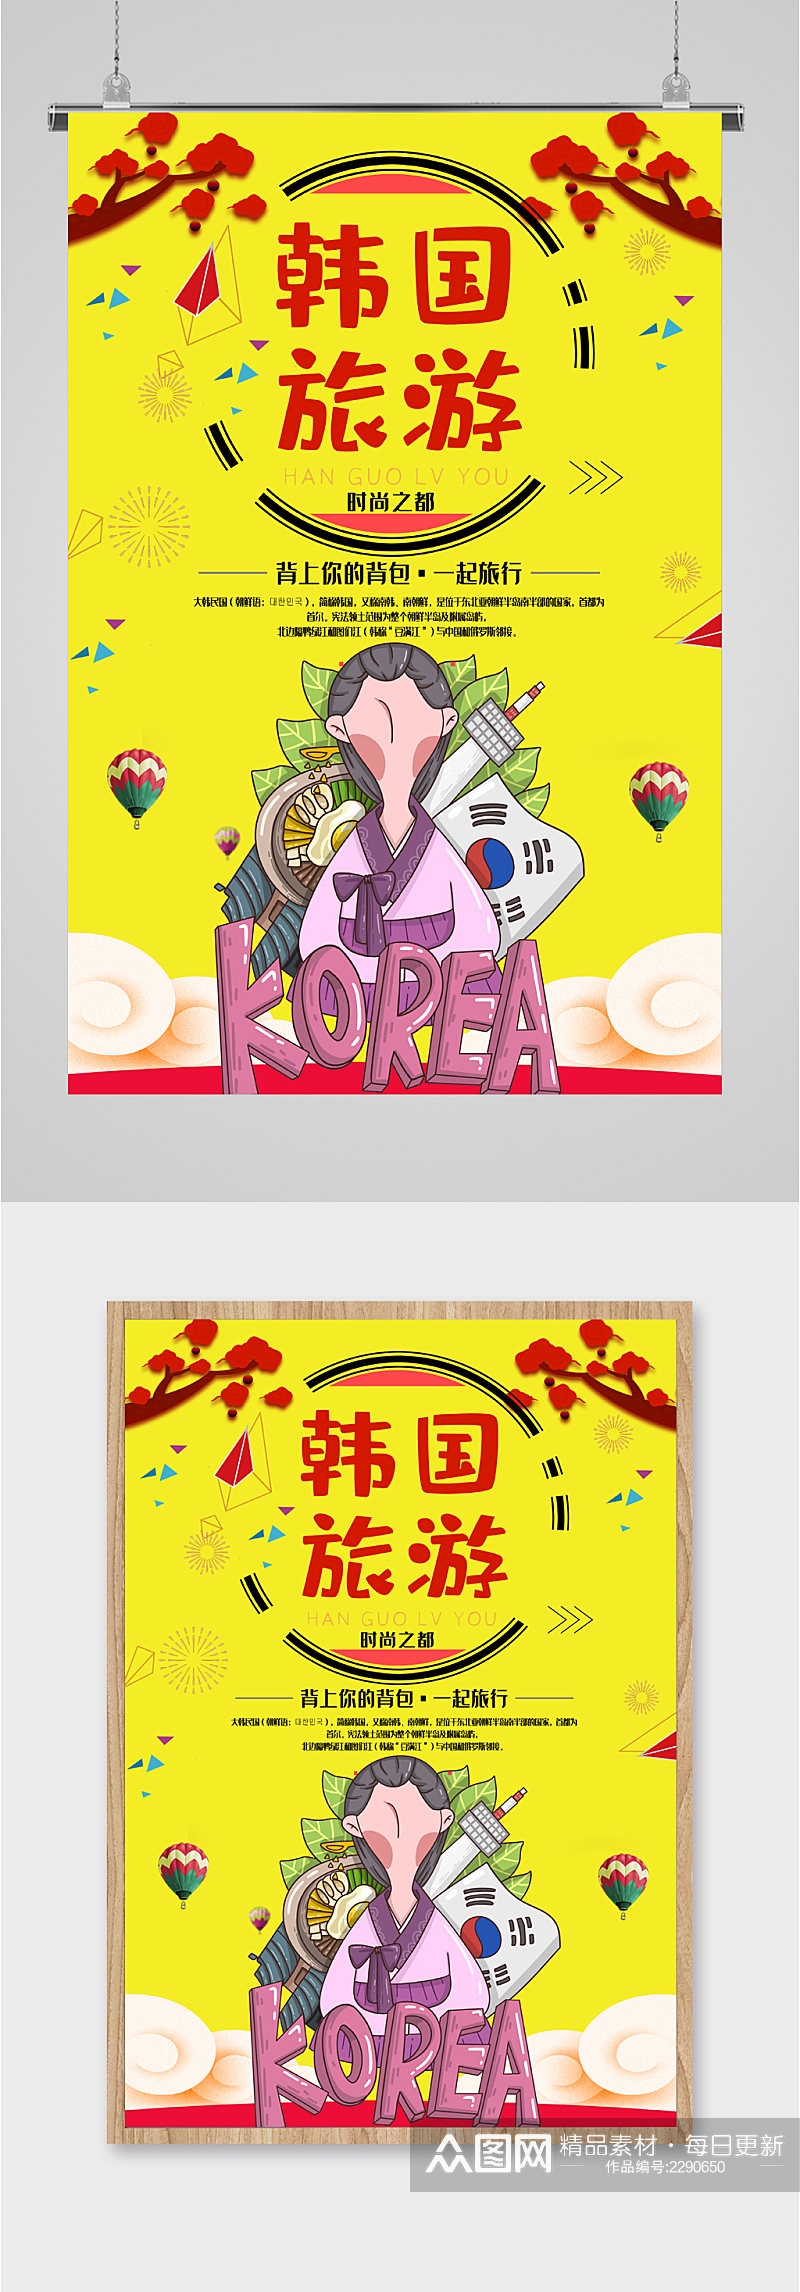 韩国旅游插画海报素材